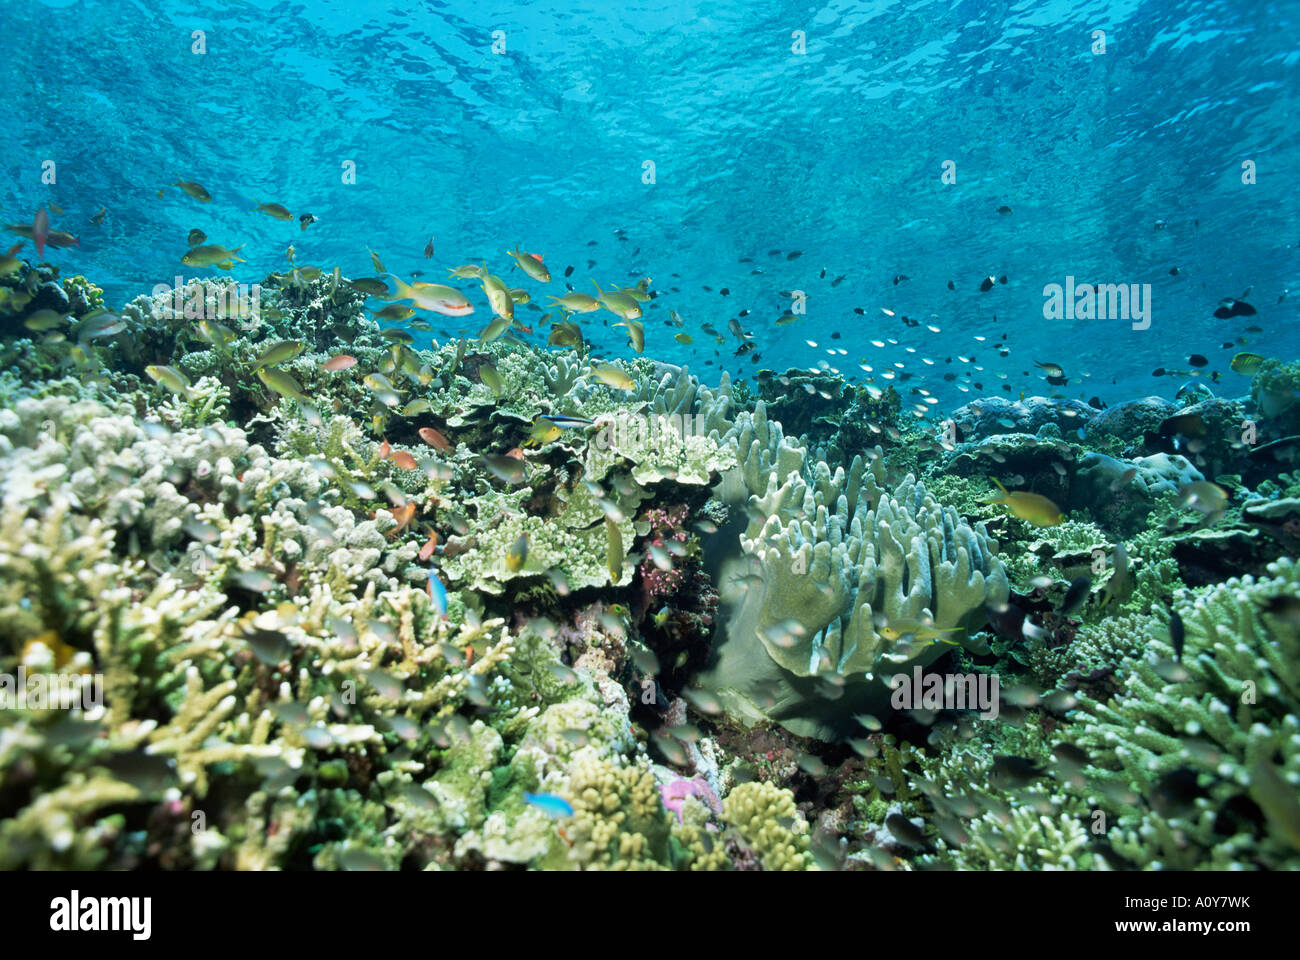 Top poco profonda del reef è vivaio di giovani pesci Sabah Malaysia Asia del sud-est asiatico Foto Stock